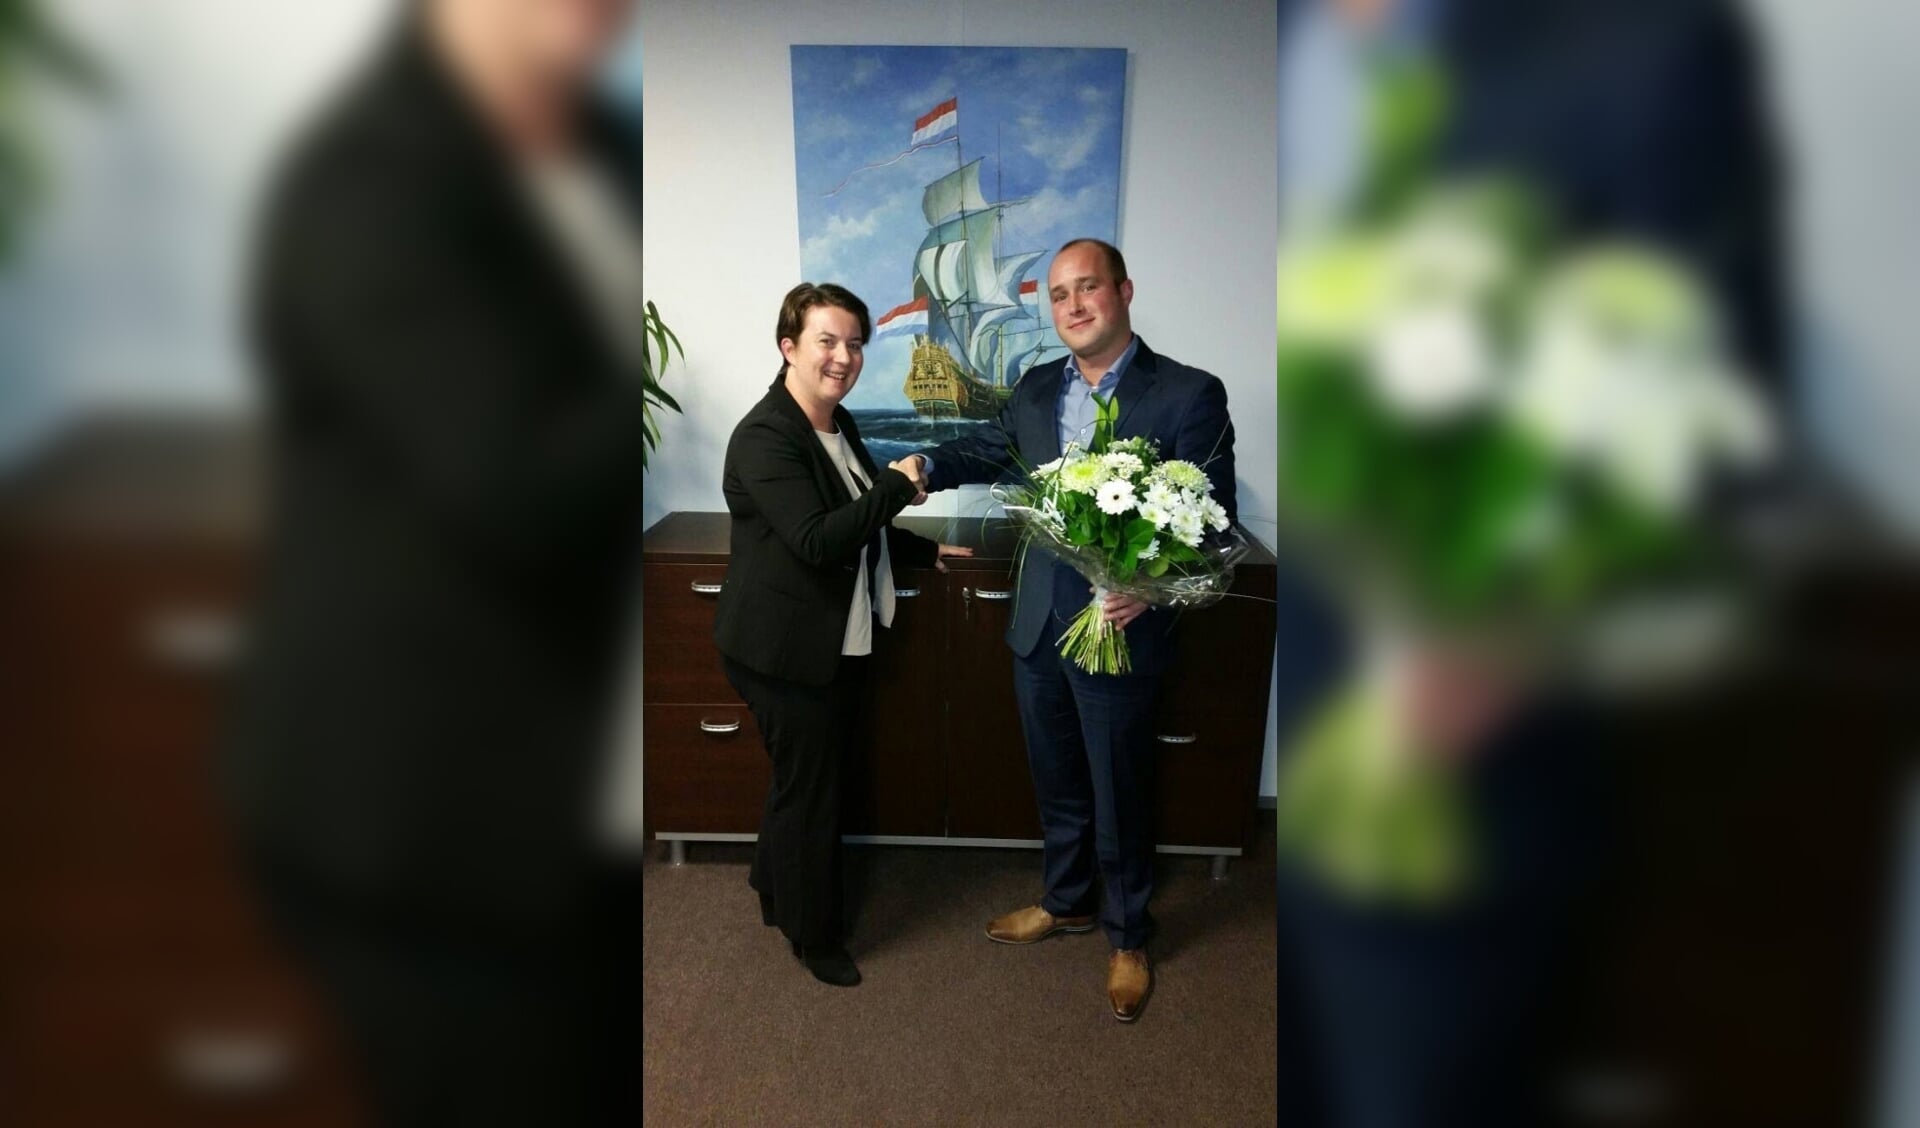  Bart-Jan Gardebroek overhandigt bloemen aan Claudi Groothuis-Schuurman